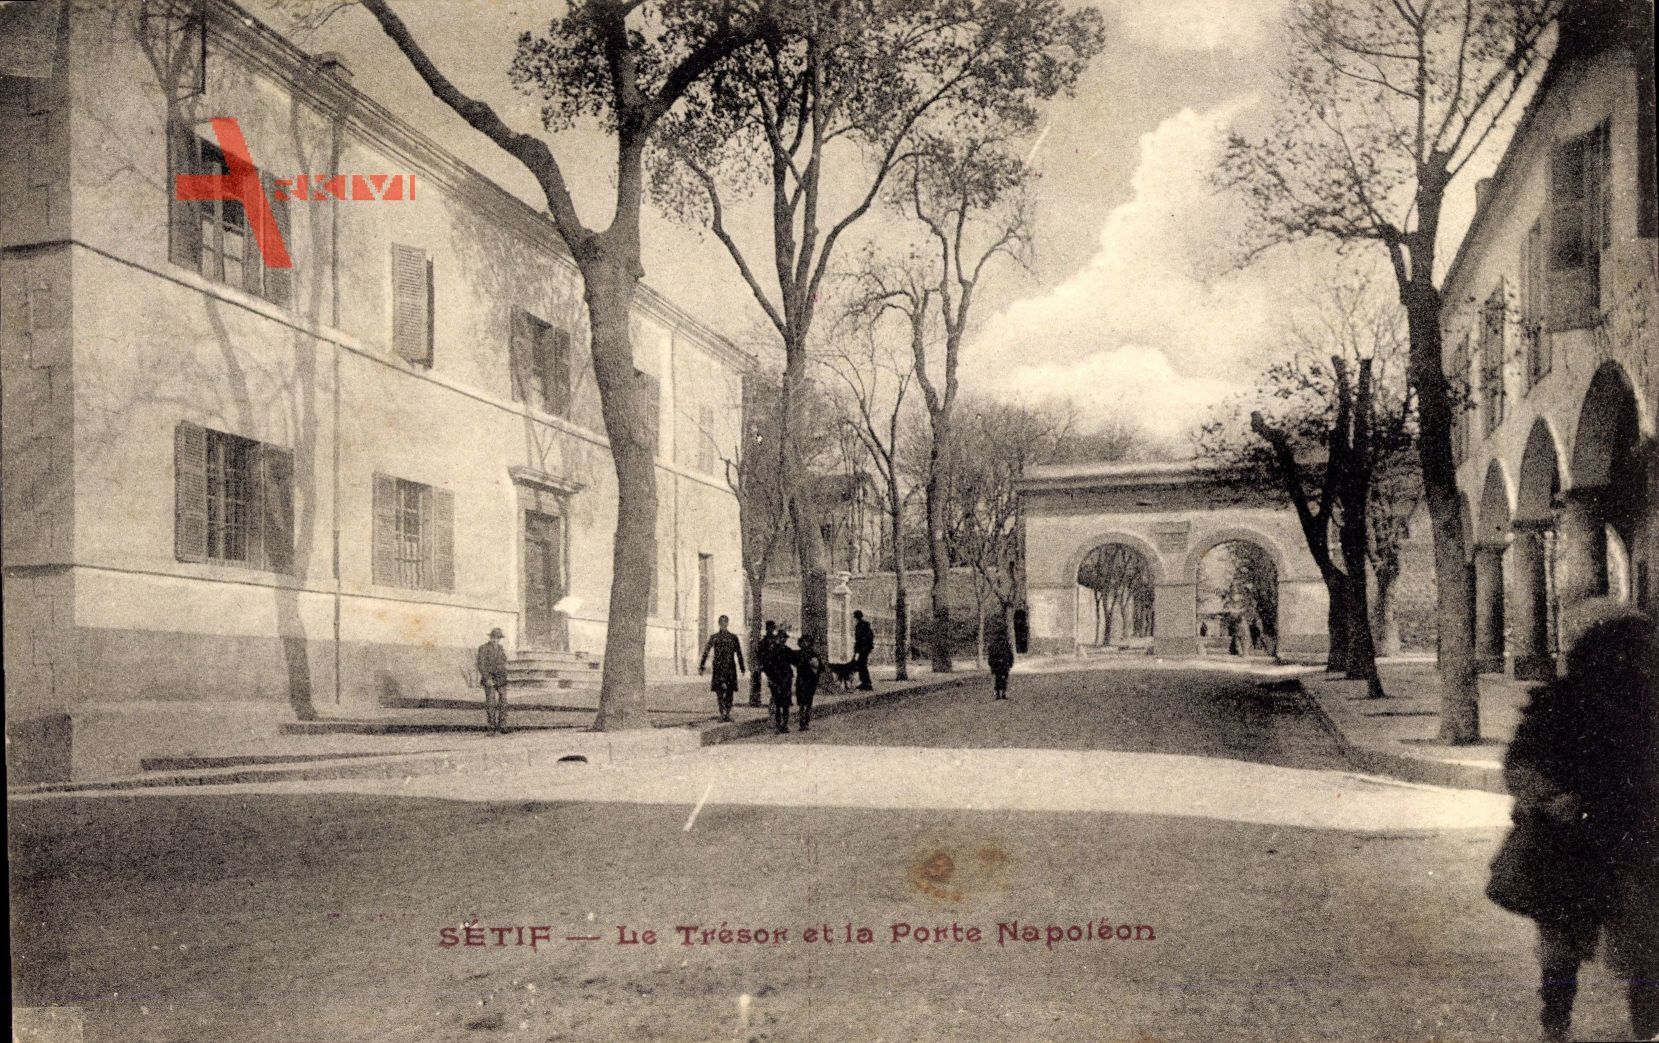 Setif Algerien, Le Tresor et la Porte Napoleon, Straßenpartie, Häuser